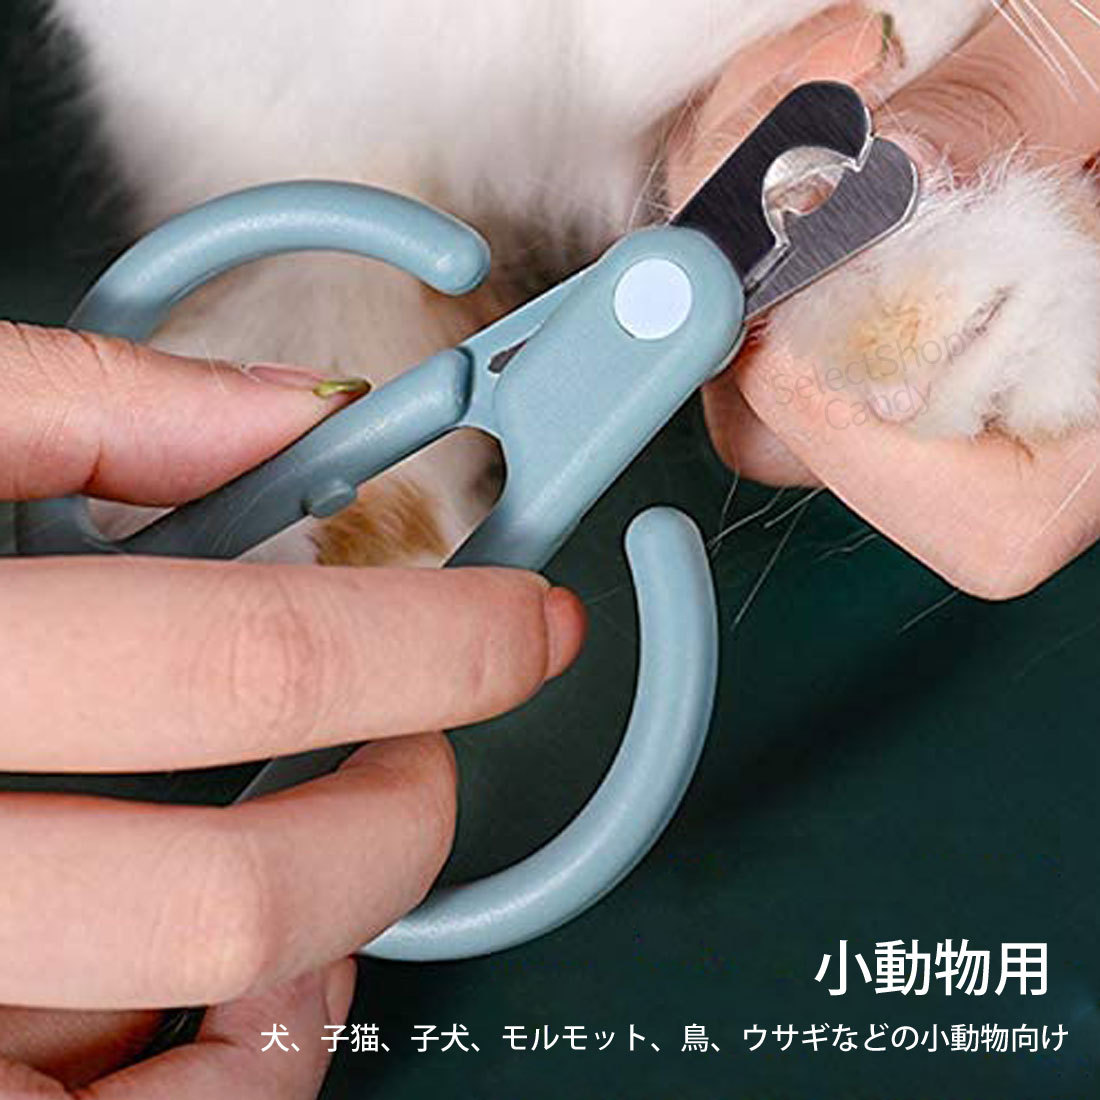 猫 爪切り つめきり カーブ爪きり ペット用爪切り 小型犬 ネコ用 ネイルケア トリマーハサミ ペットネイルトリマー 安全安心 軽量 持ちや